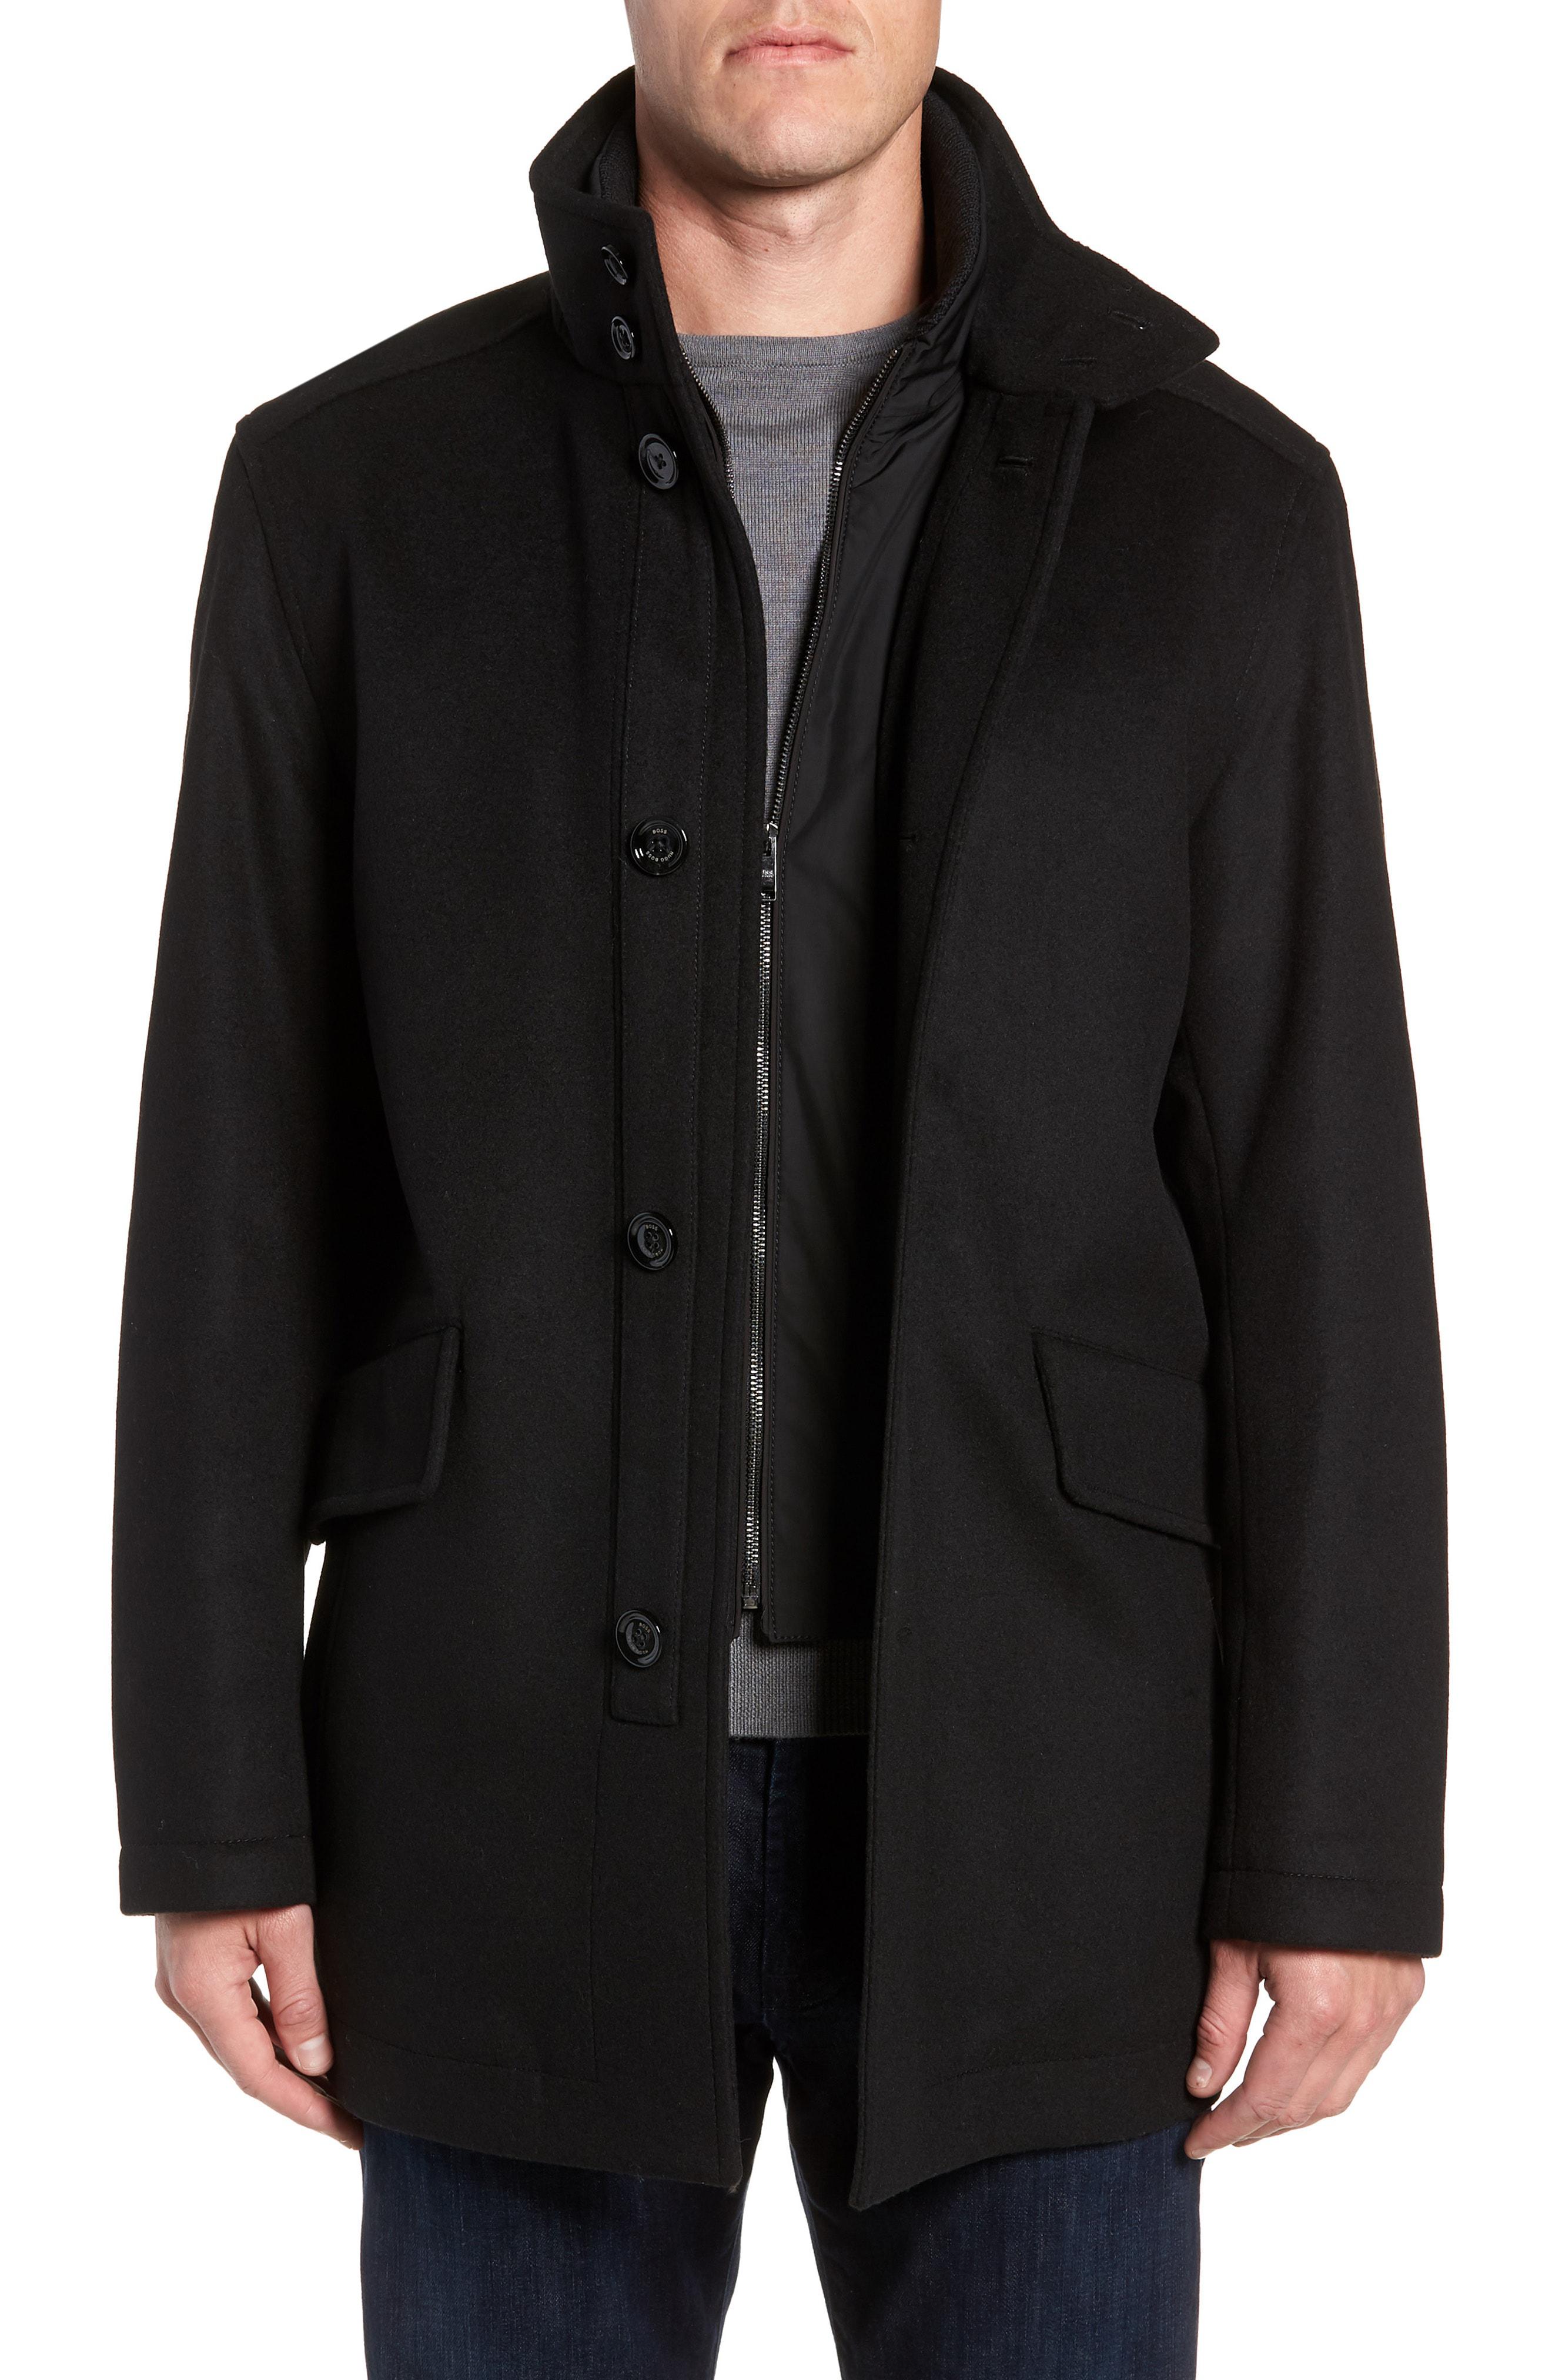 BOSS Coxtan Wool Regular Fit Car Coat in Black for Men - Lyst